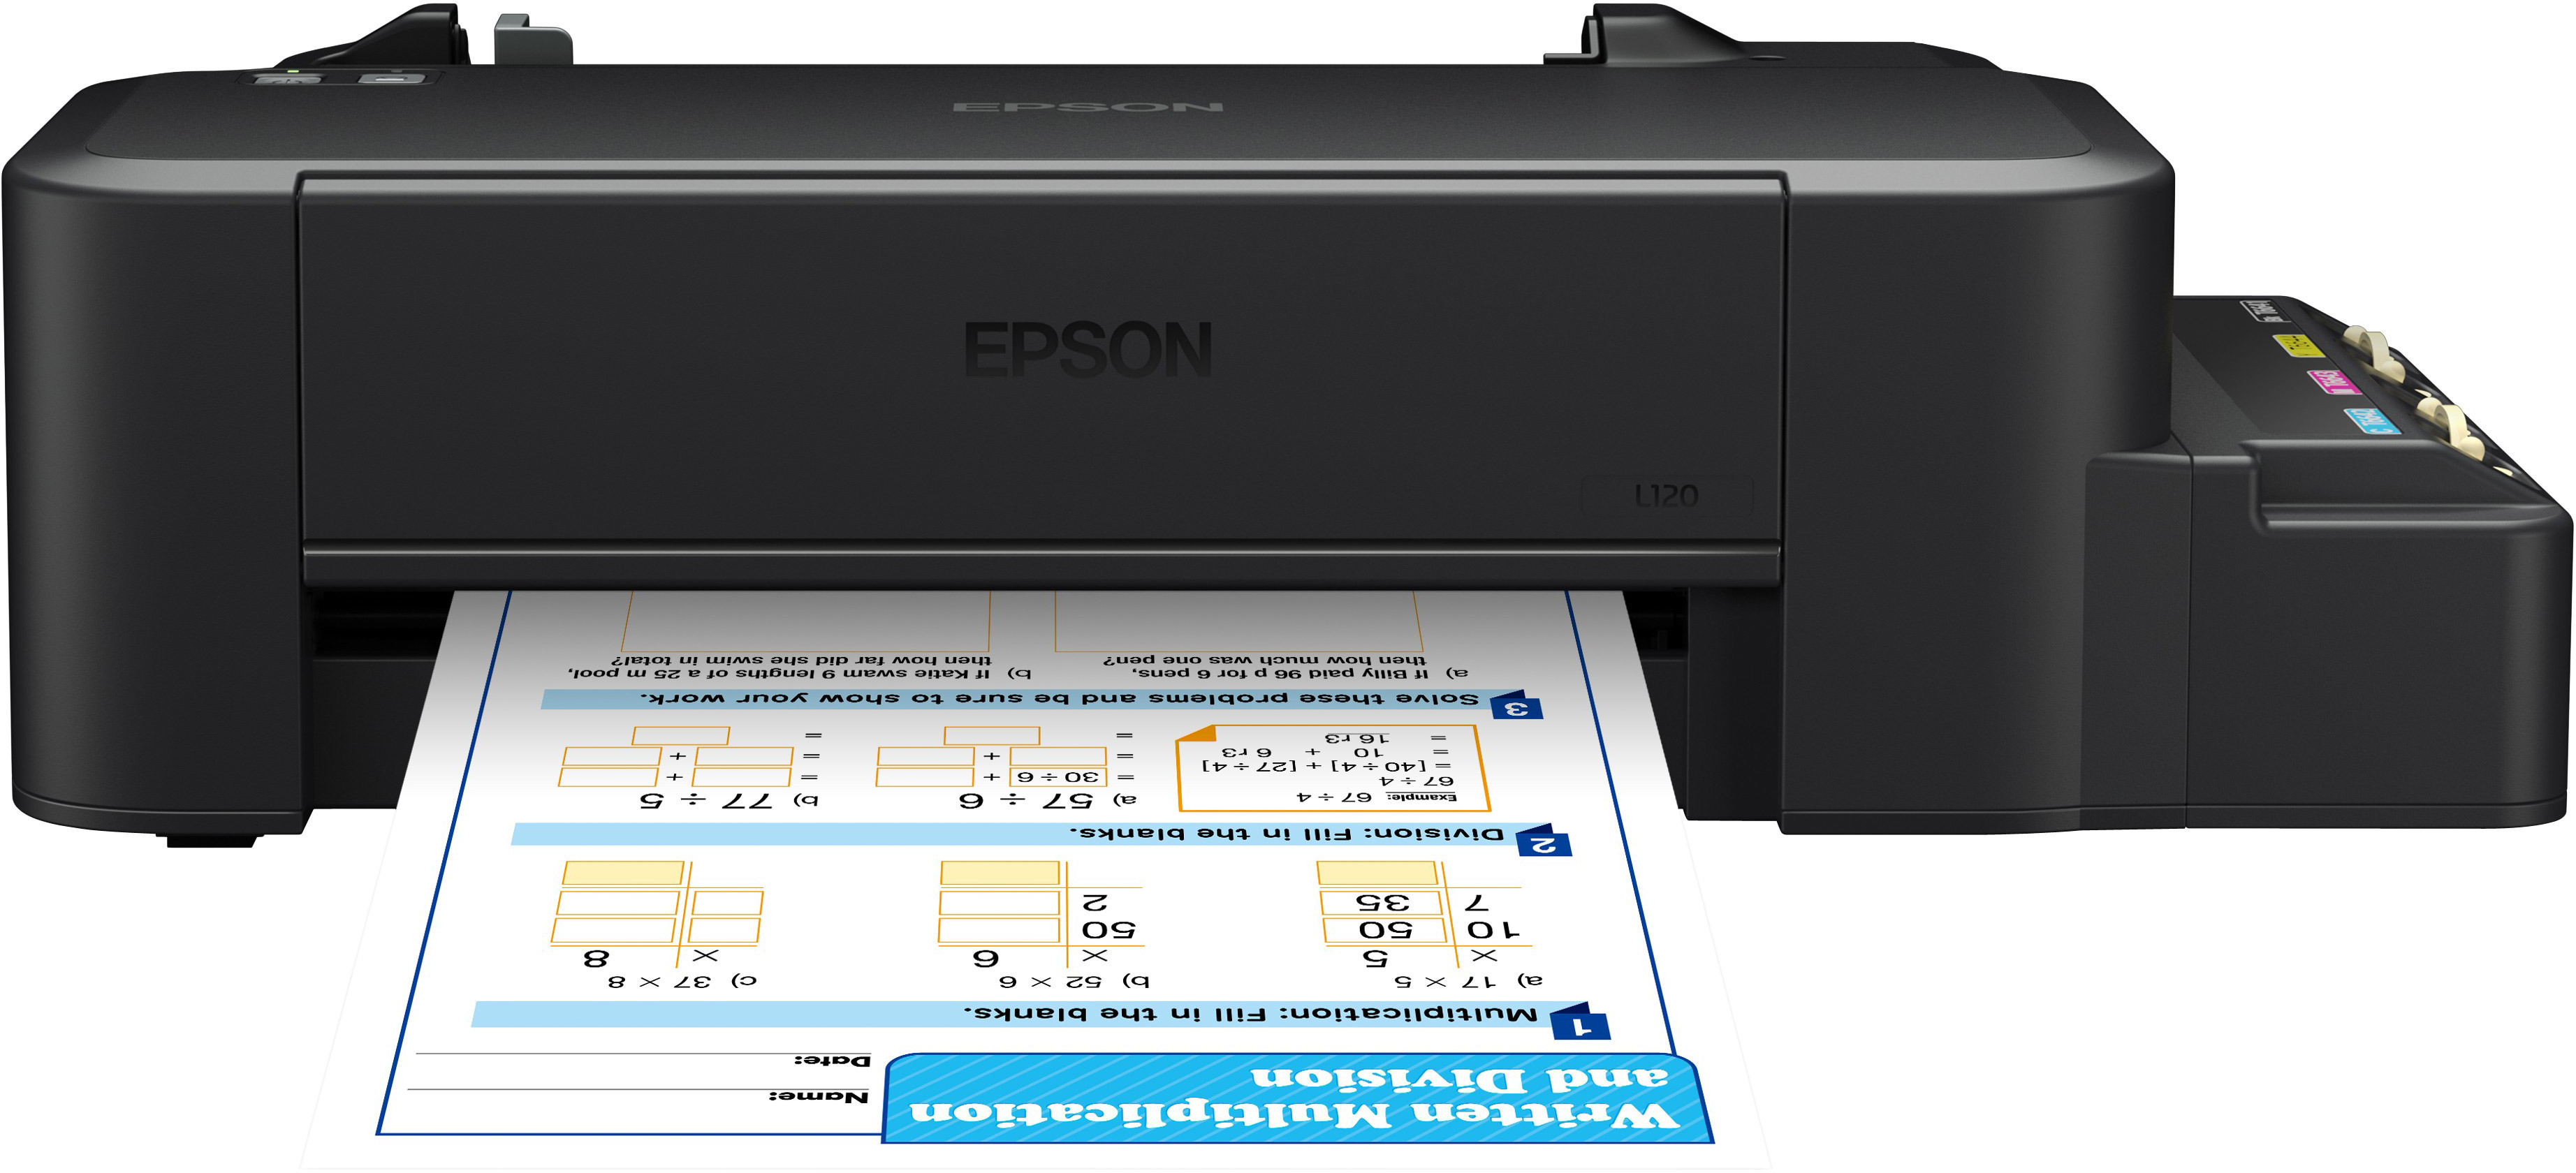 Программа epson easy photo print скачать